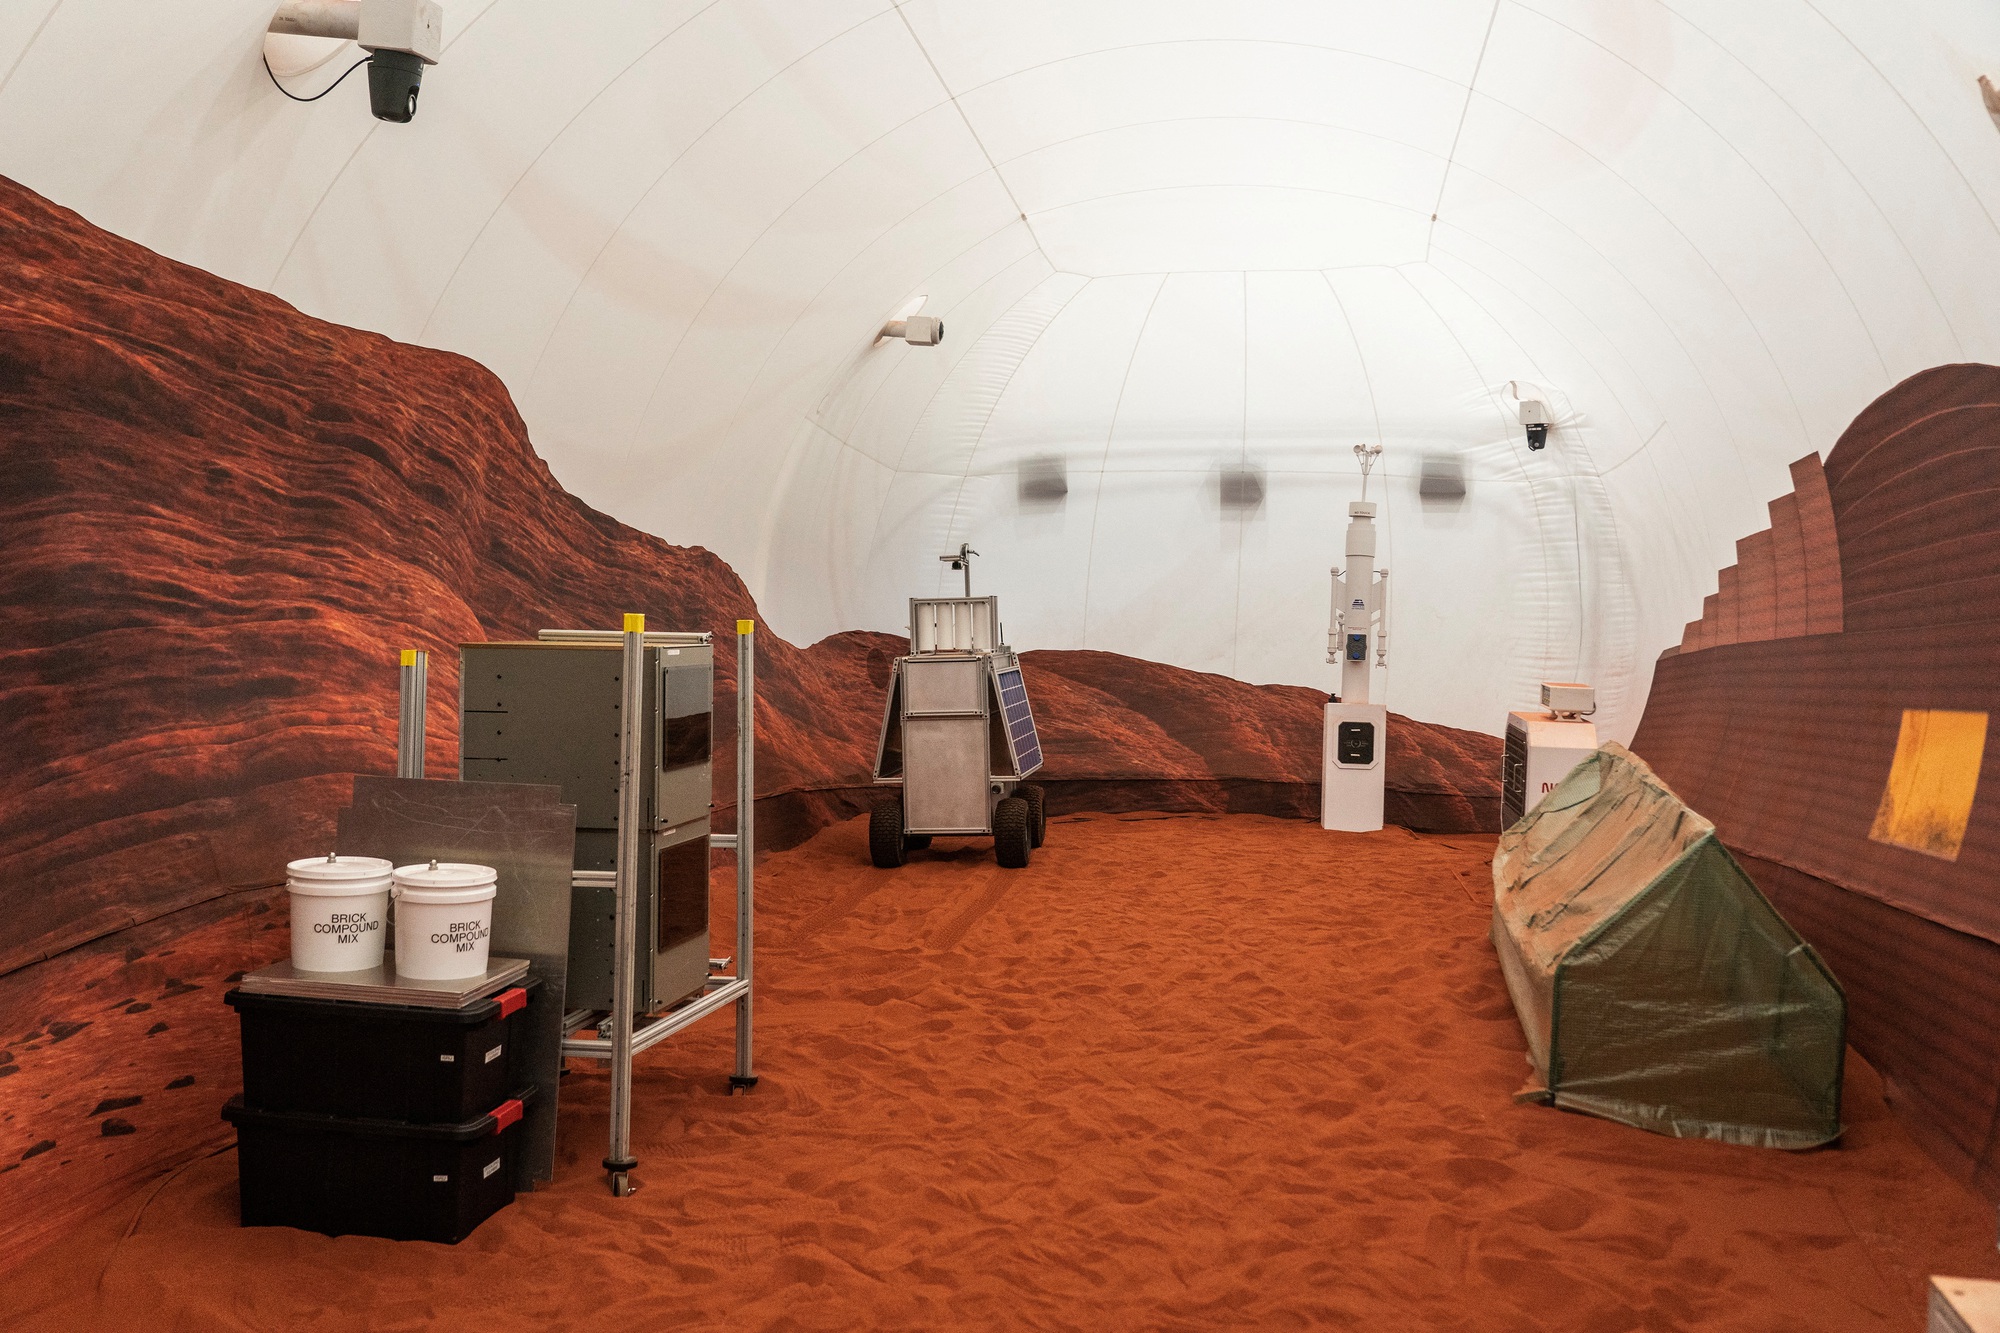 Bên trong khu vực mô phỏng môi trường sống trên sao Hỏa của NASA - Ảnh 1.